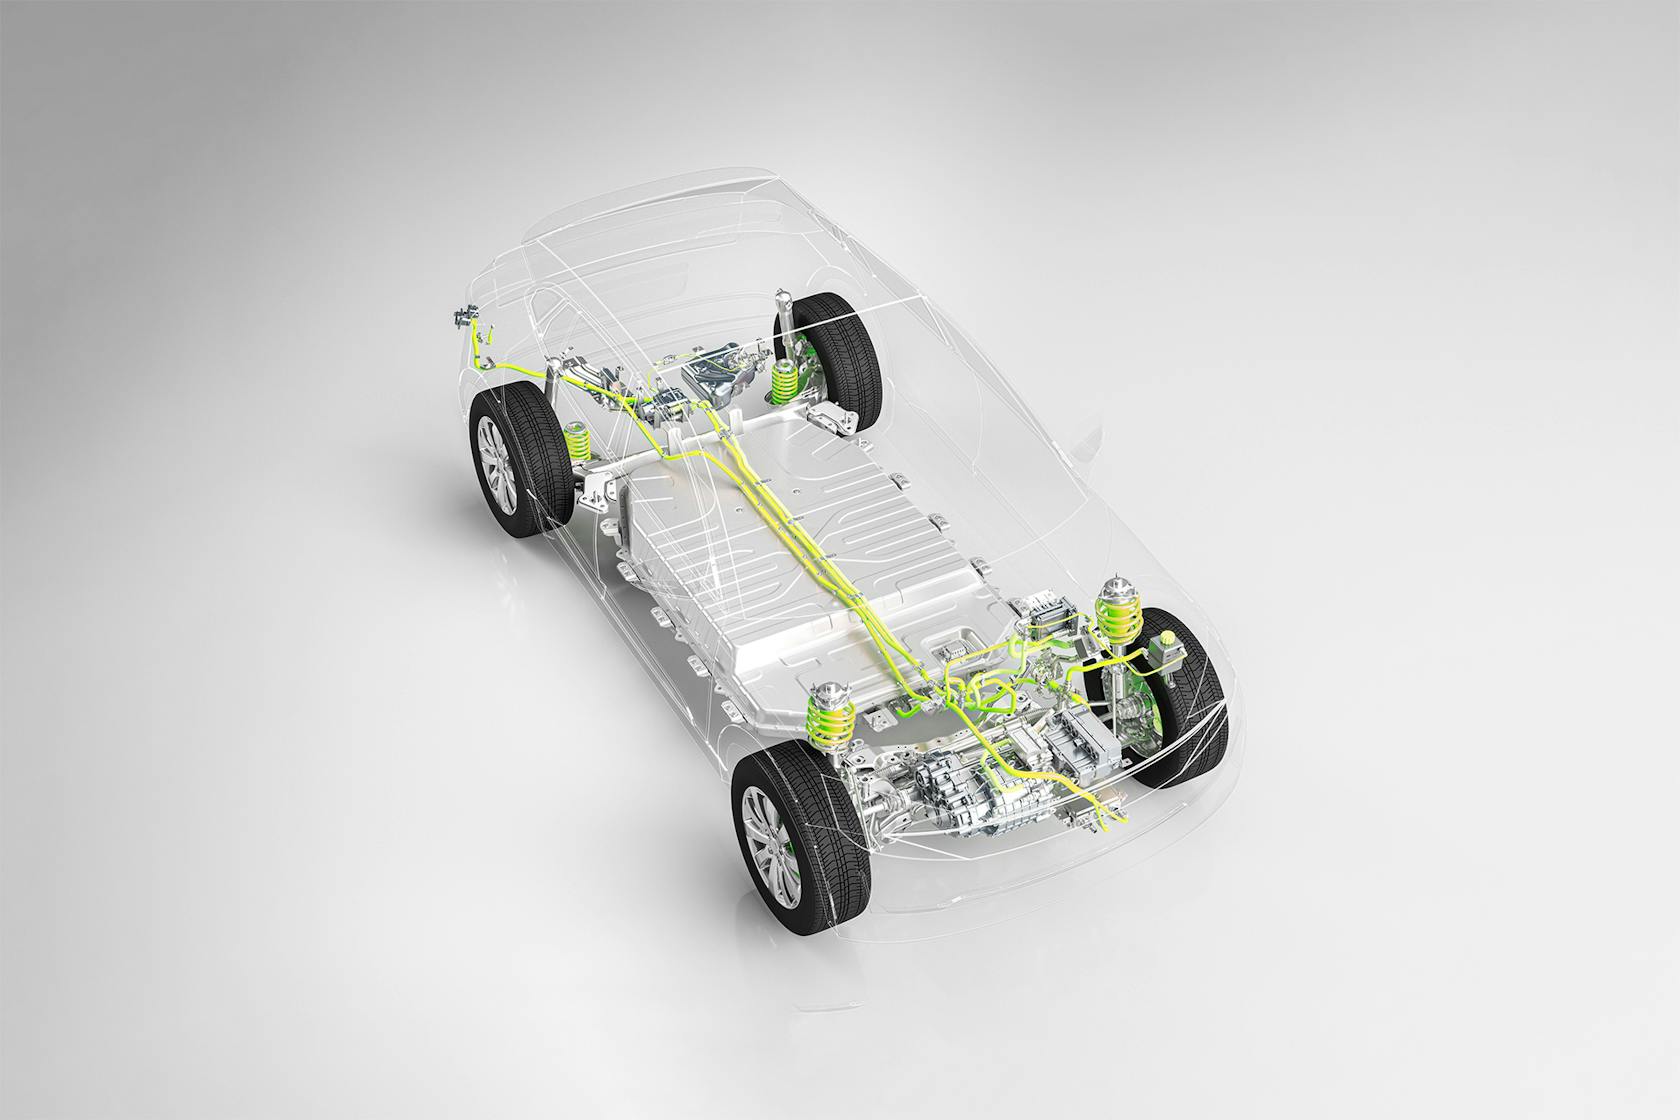 سيارة ذات هيكل شفاف يظهر المحرك الكهربائي وتكنولوجيا البطارية